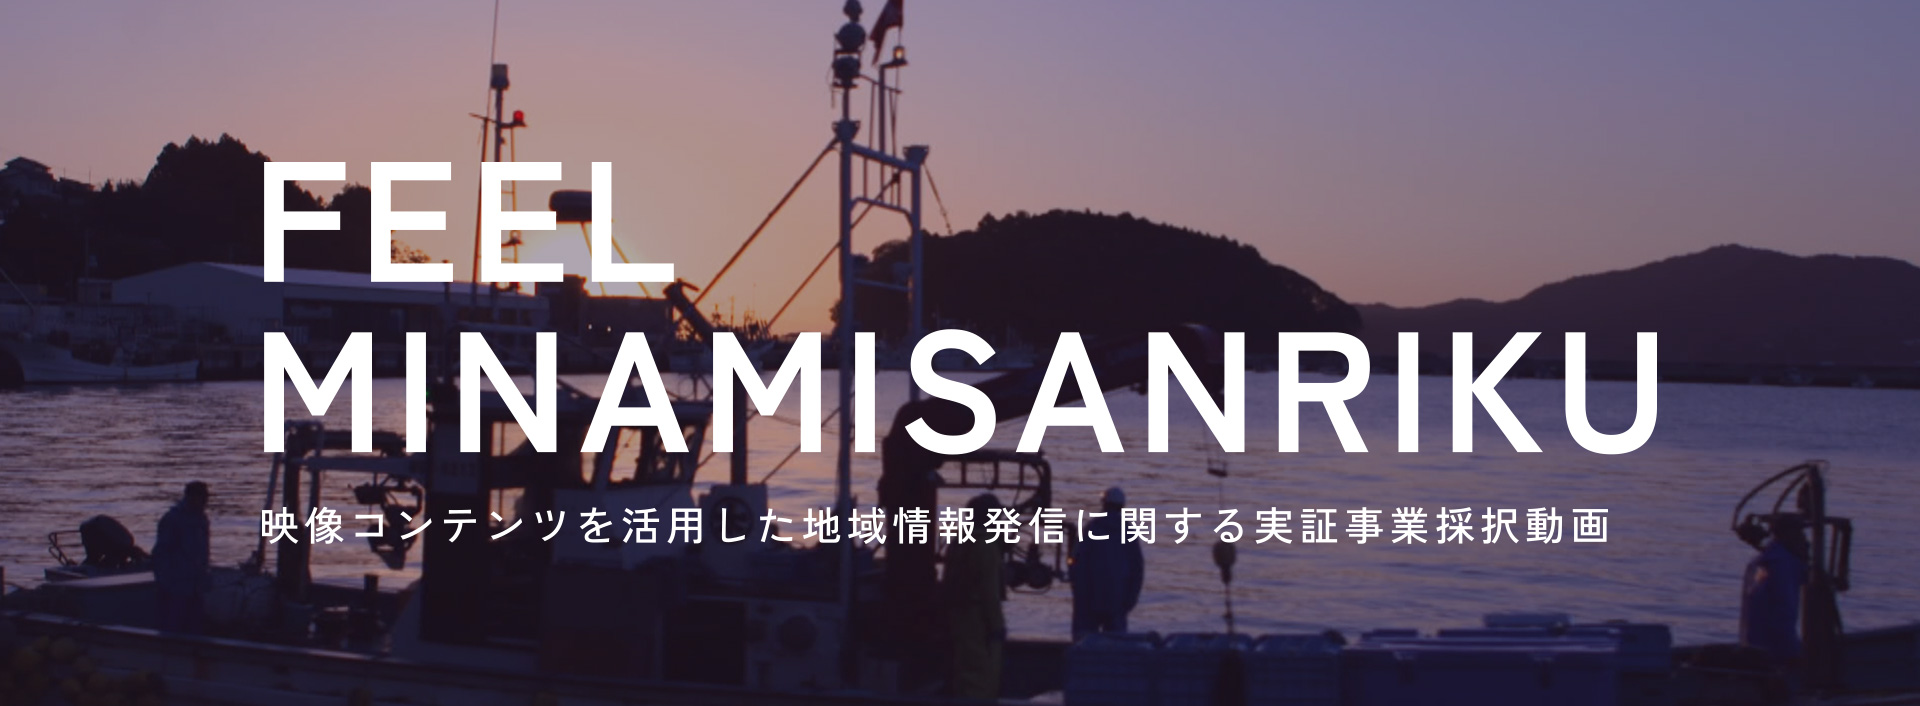 総務省「映像コンテンツを活用した地域情報発信に関する実証事業」採択動画「Feel Minamisanriku」がDiscoveryで公開されました